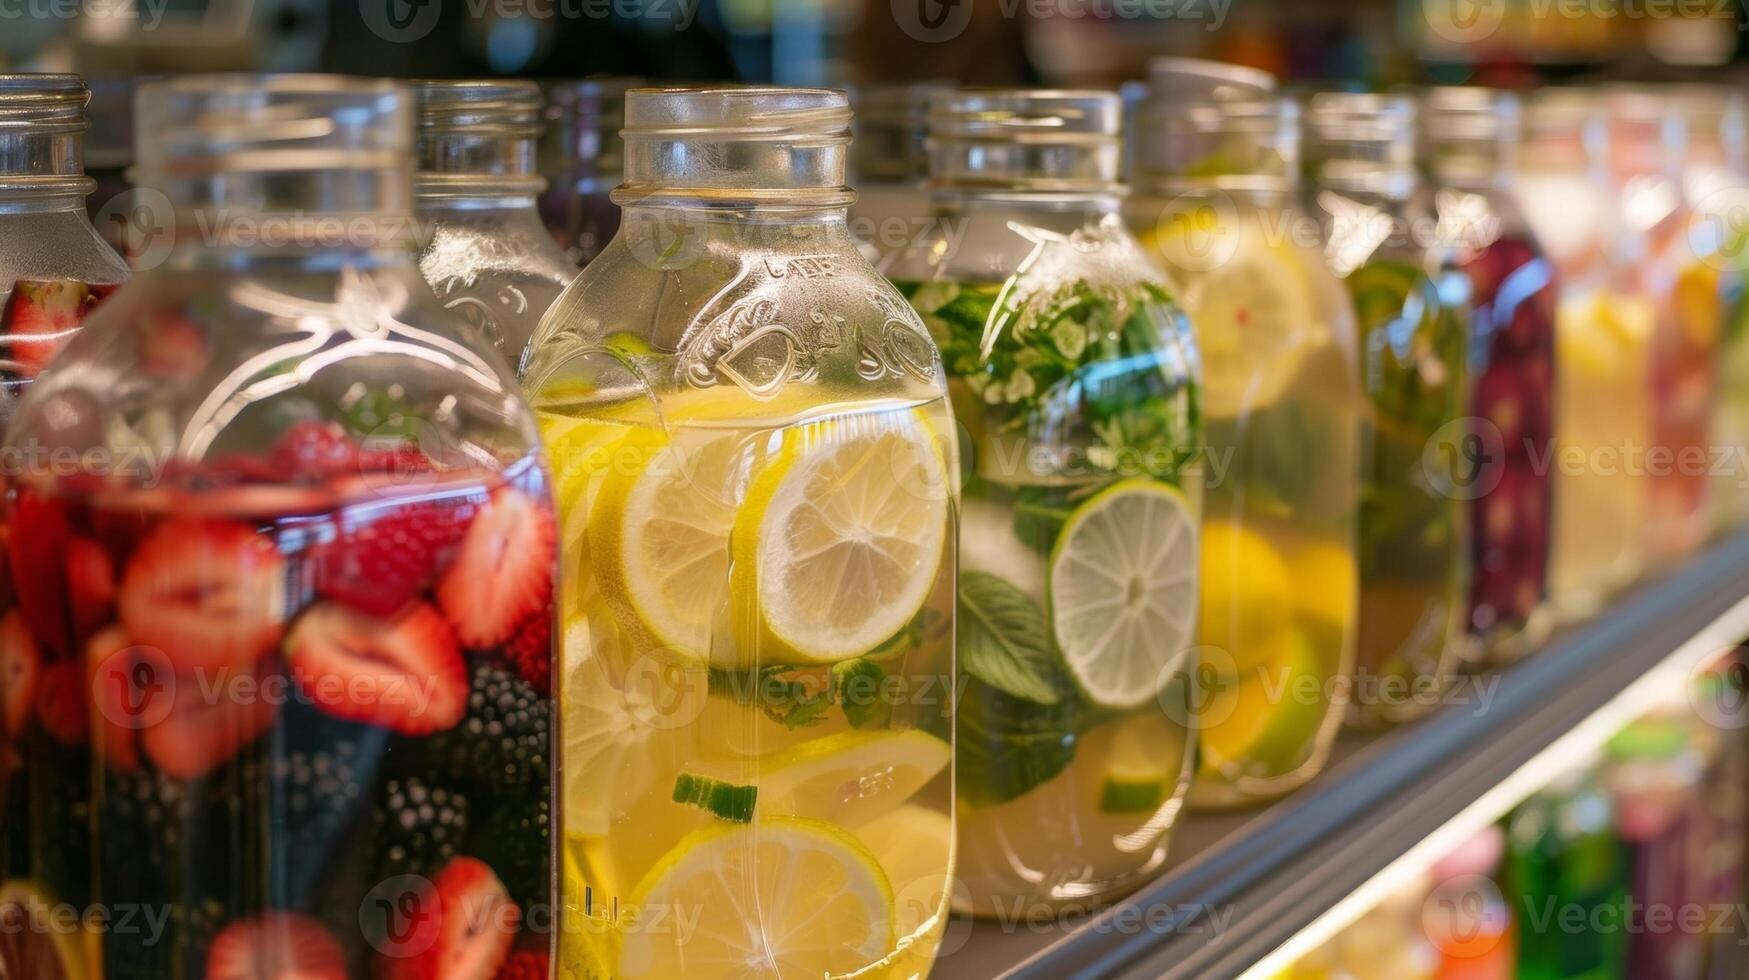 uma seleção do infundido águas exibido dentro vidro frascos com colorida etiquetas convidativo clientes para experimentar diferente sabores foto